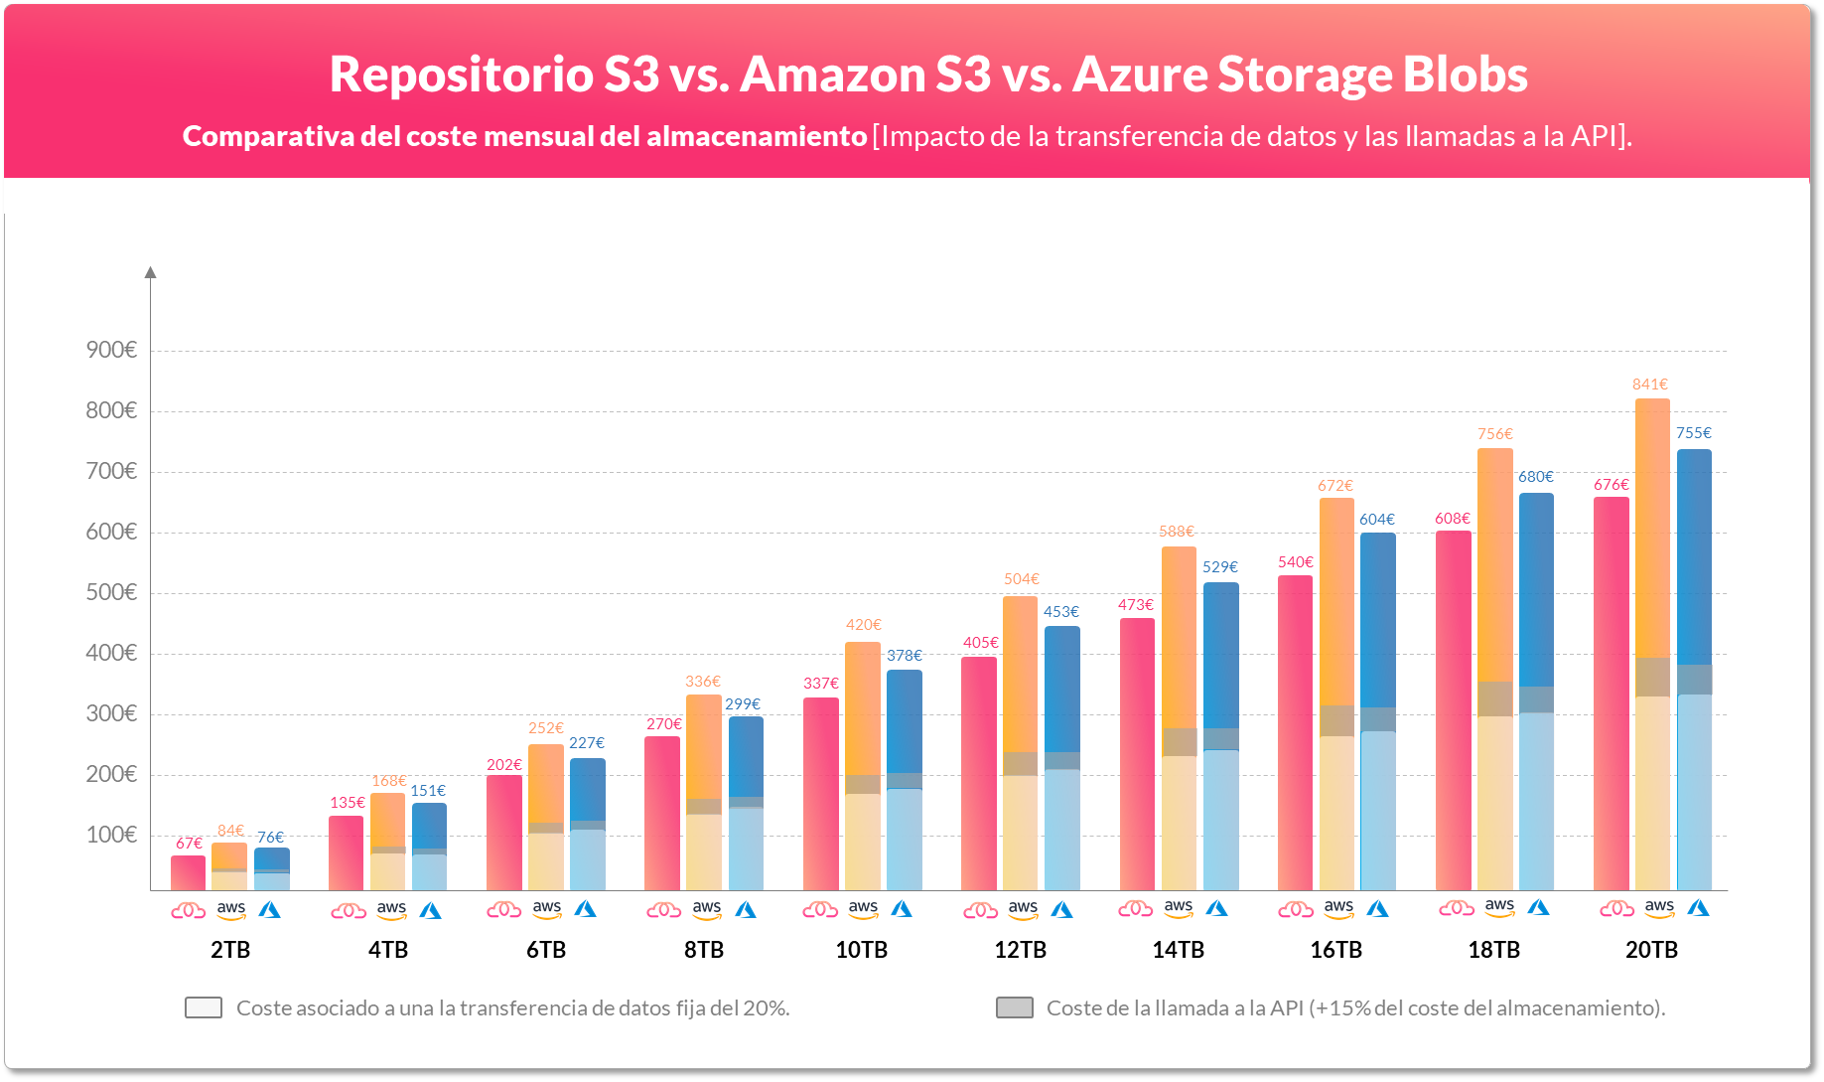 Comparação do custo mensal detalhado para Repositório S3 vs. Amazon S3 vs. Azure Storage Blobs